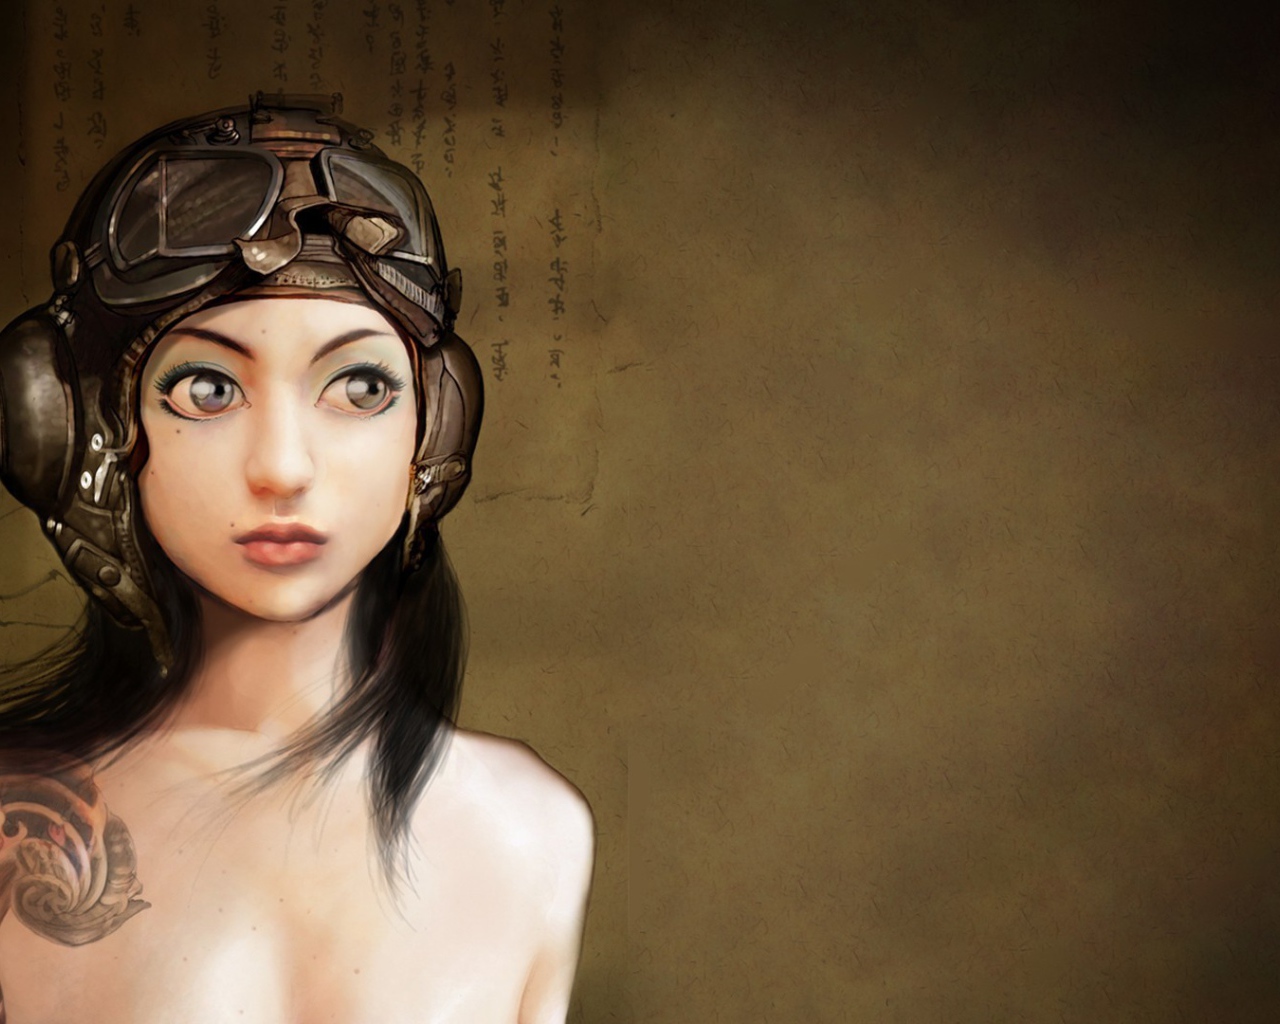 Японская девушка в старом шлеме летчика, рисунок